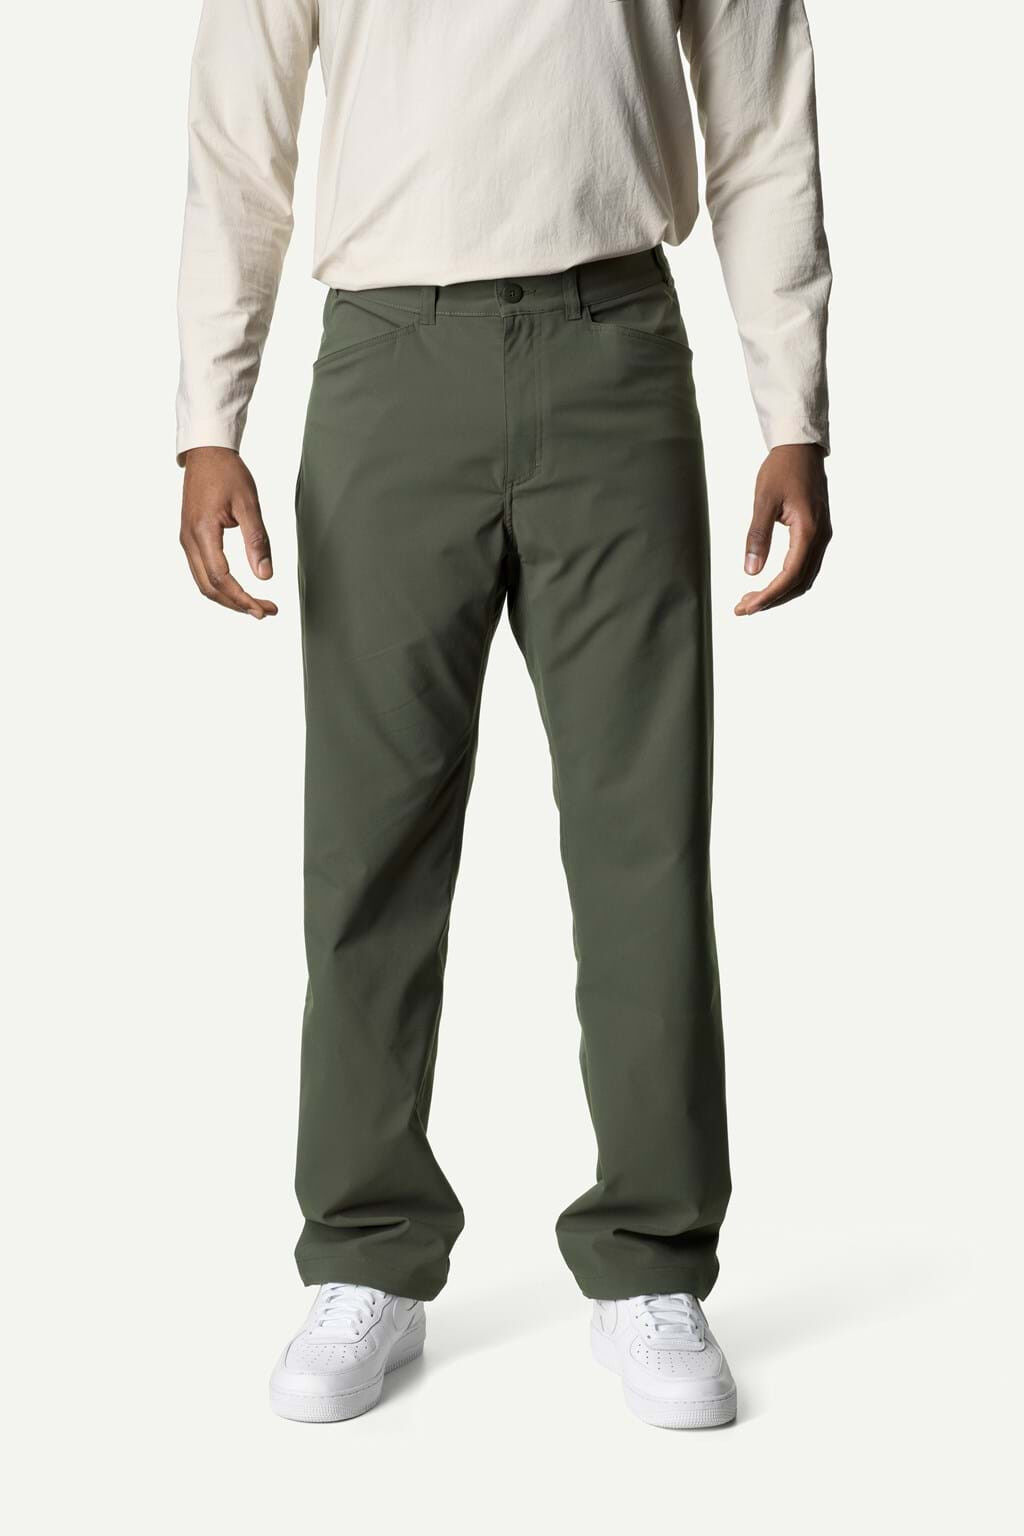 Houdini Sportswear Dock Pants - Walking trousers - Men's | Hardloop